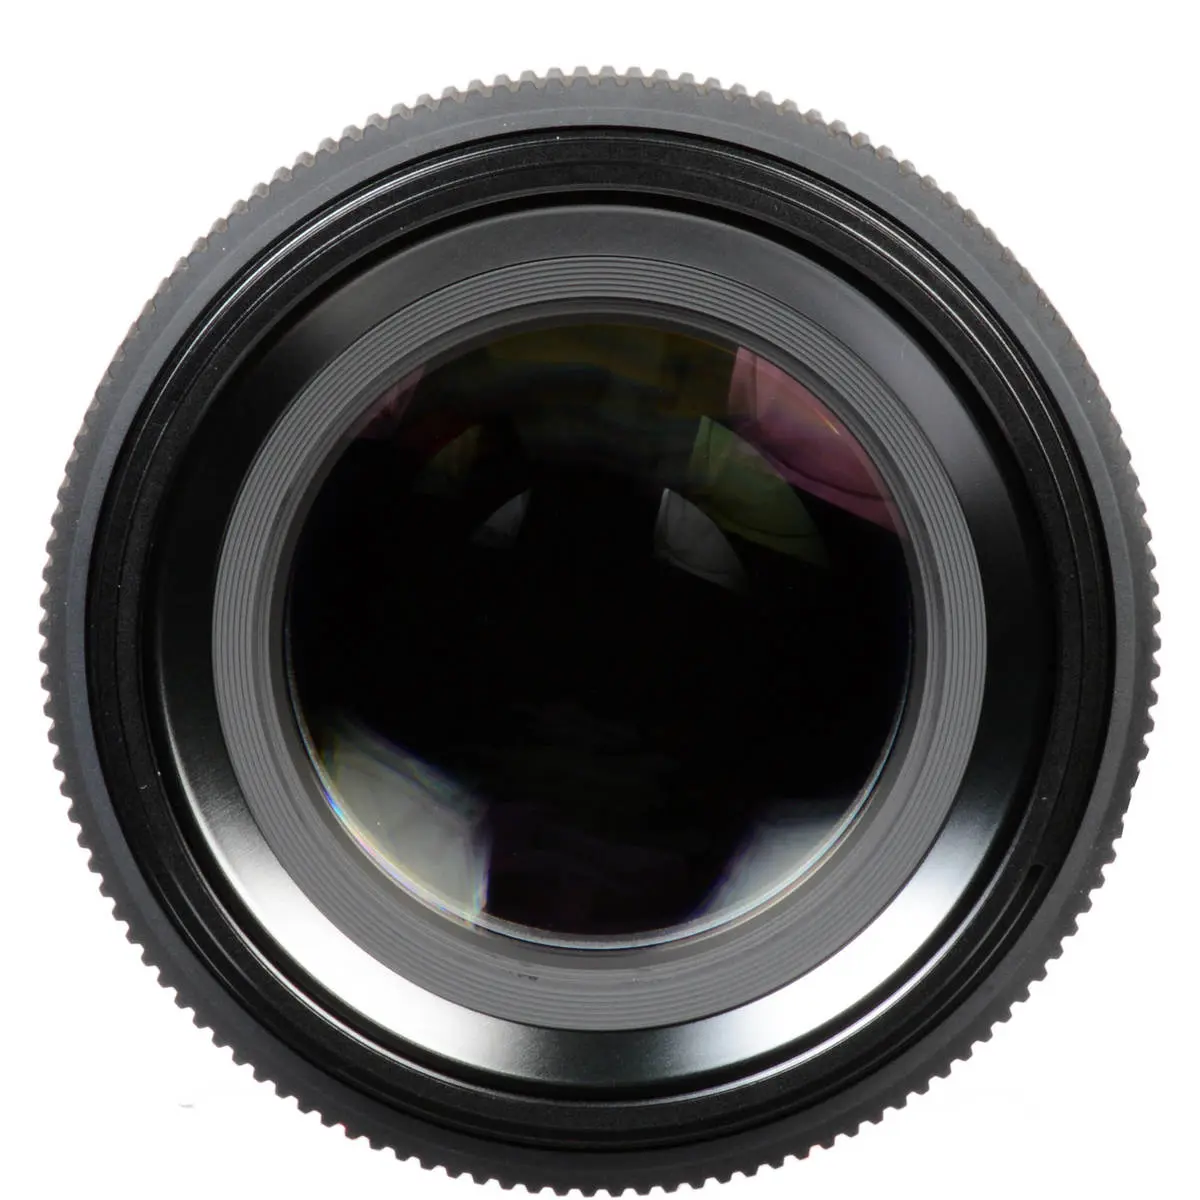 5. FUJINON LENS GF 110mm F2 R LM WR Lens